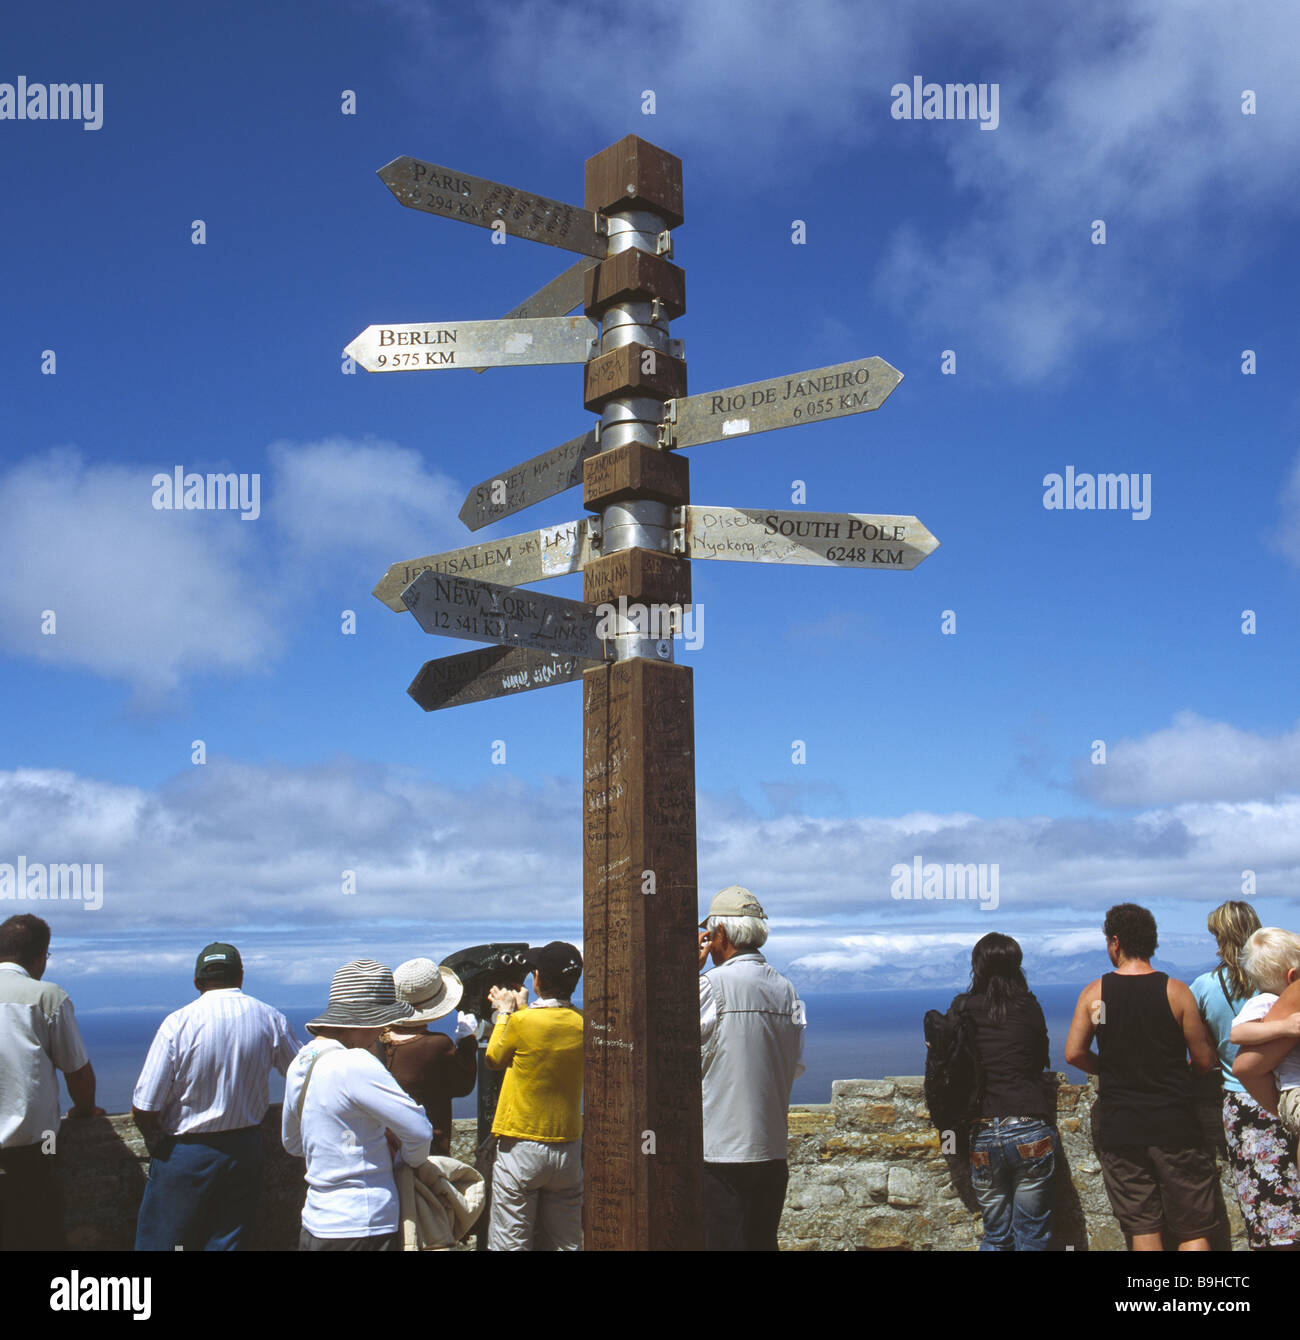 Südafrika-Westkap Touristen anzeigen Wegweiser, dass Afrika Menschen Tourismus Reiseziel Reiseziel Aussichtspunkt Blick auf Himmel schaut Stockfoto